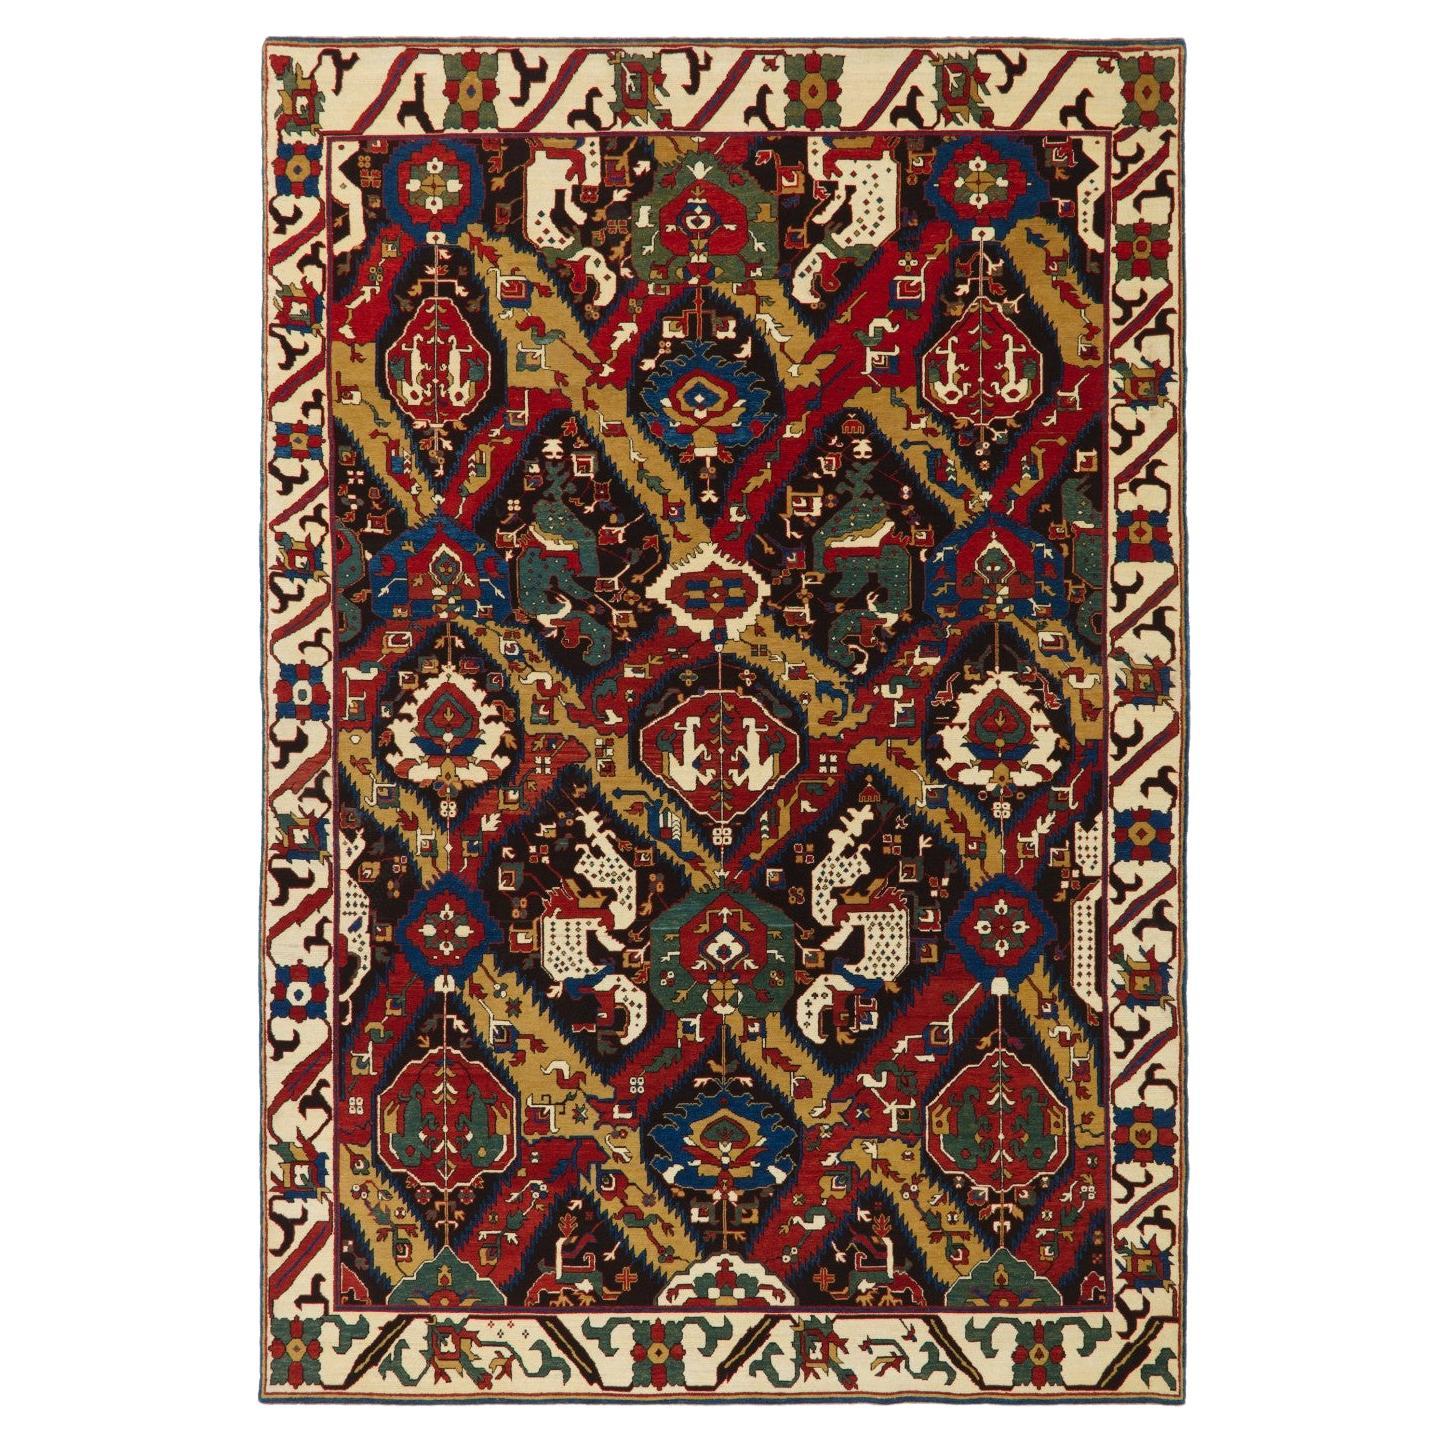 Ararat Rugs Dragon Rug, Antique Caucasus Museum Revival Carpet, Natural Dyed